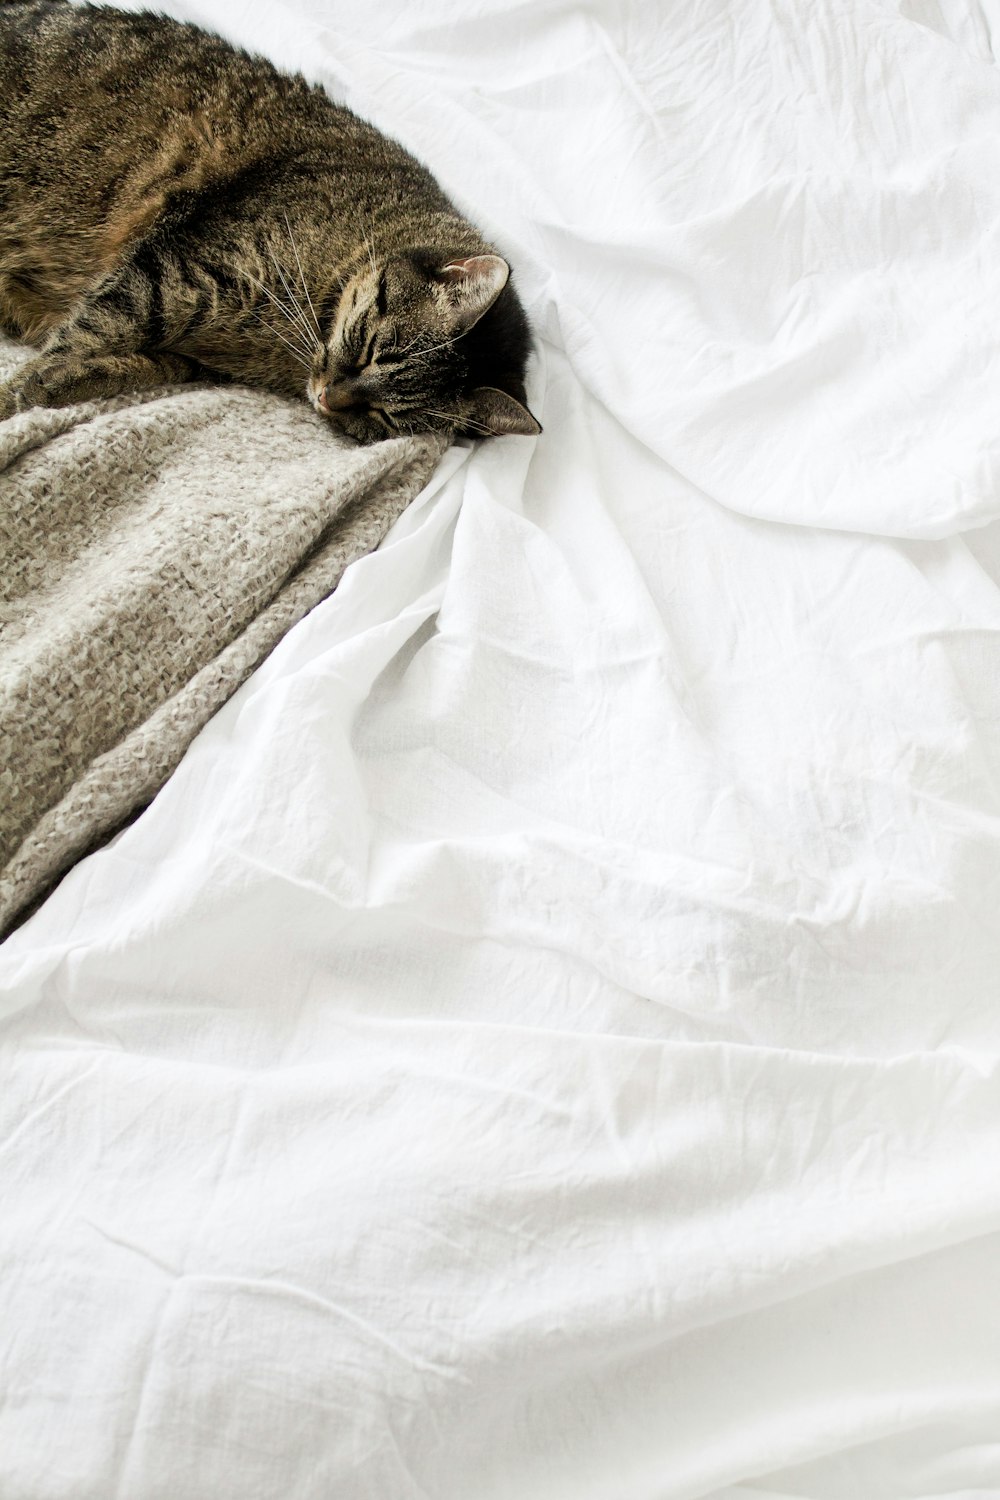 chat tigré brun couché sur textile blanc